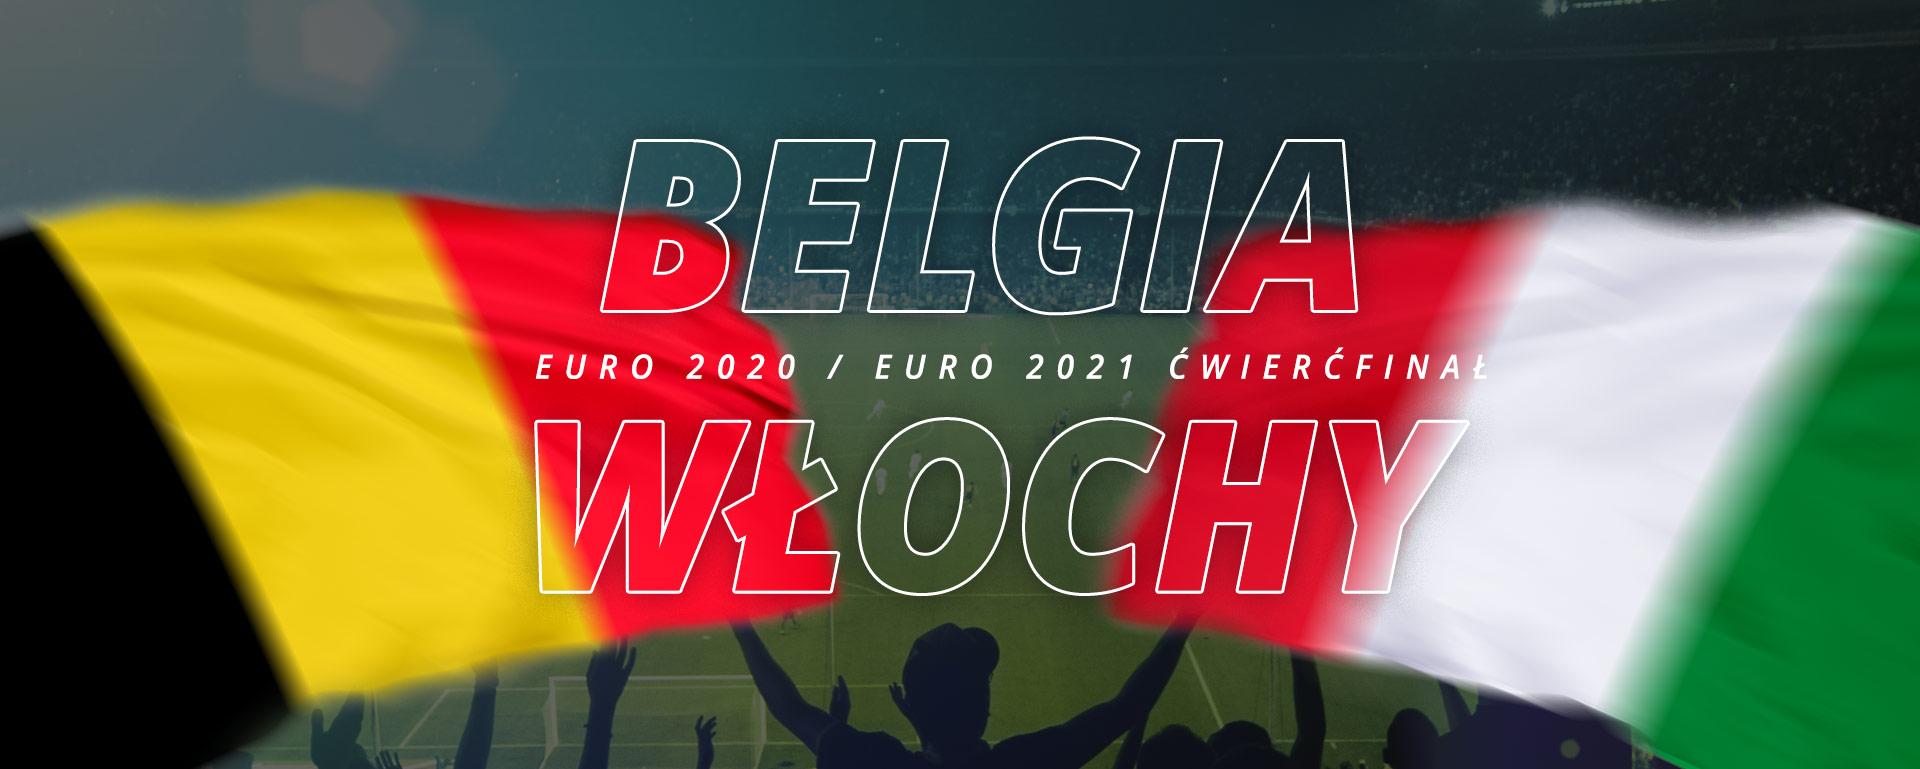 Belgia – Włochy | ćwierćfinał Euro 2020 / Euro 2021